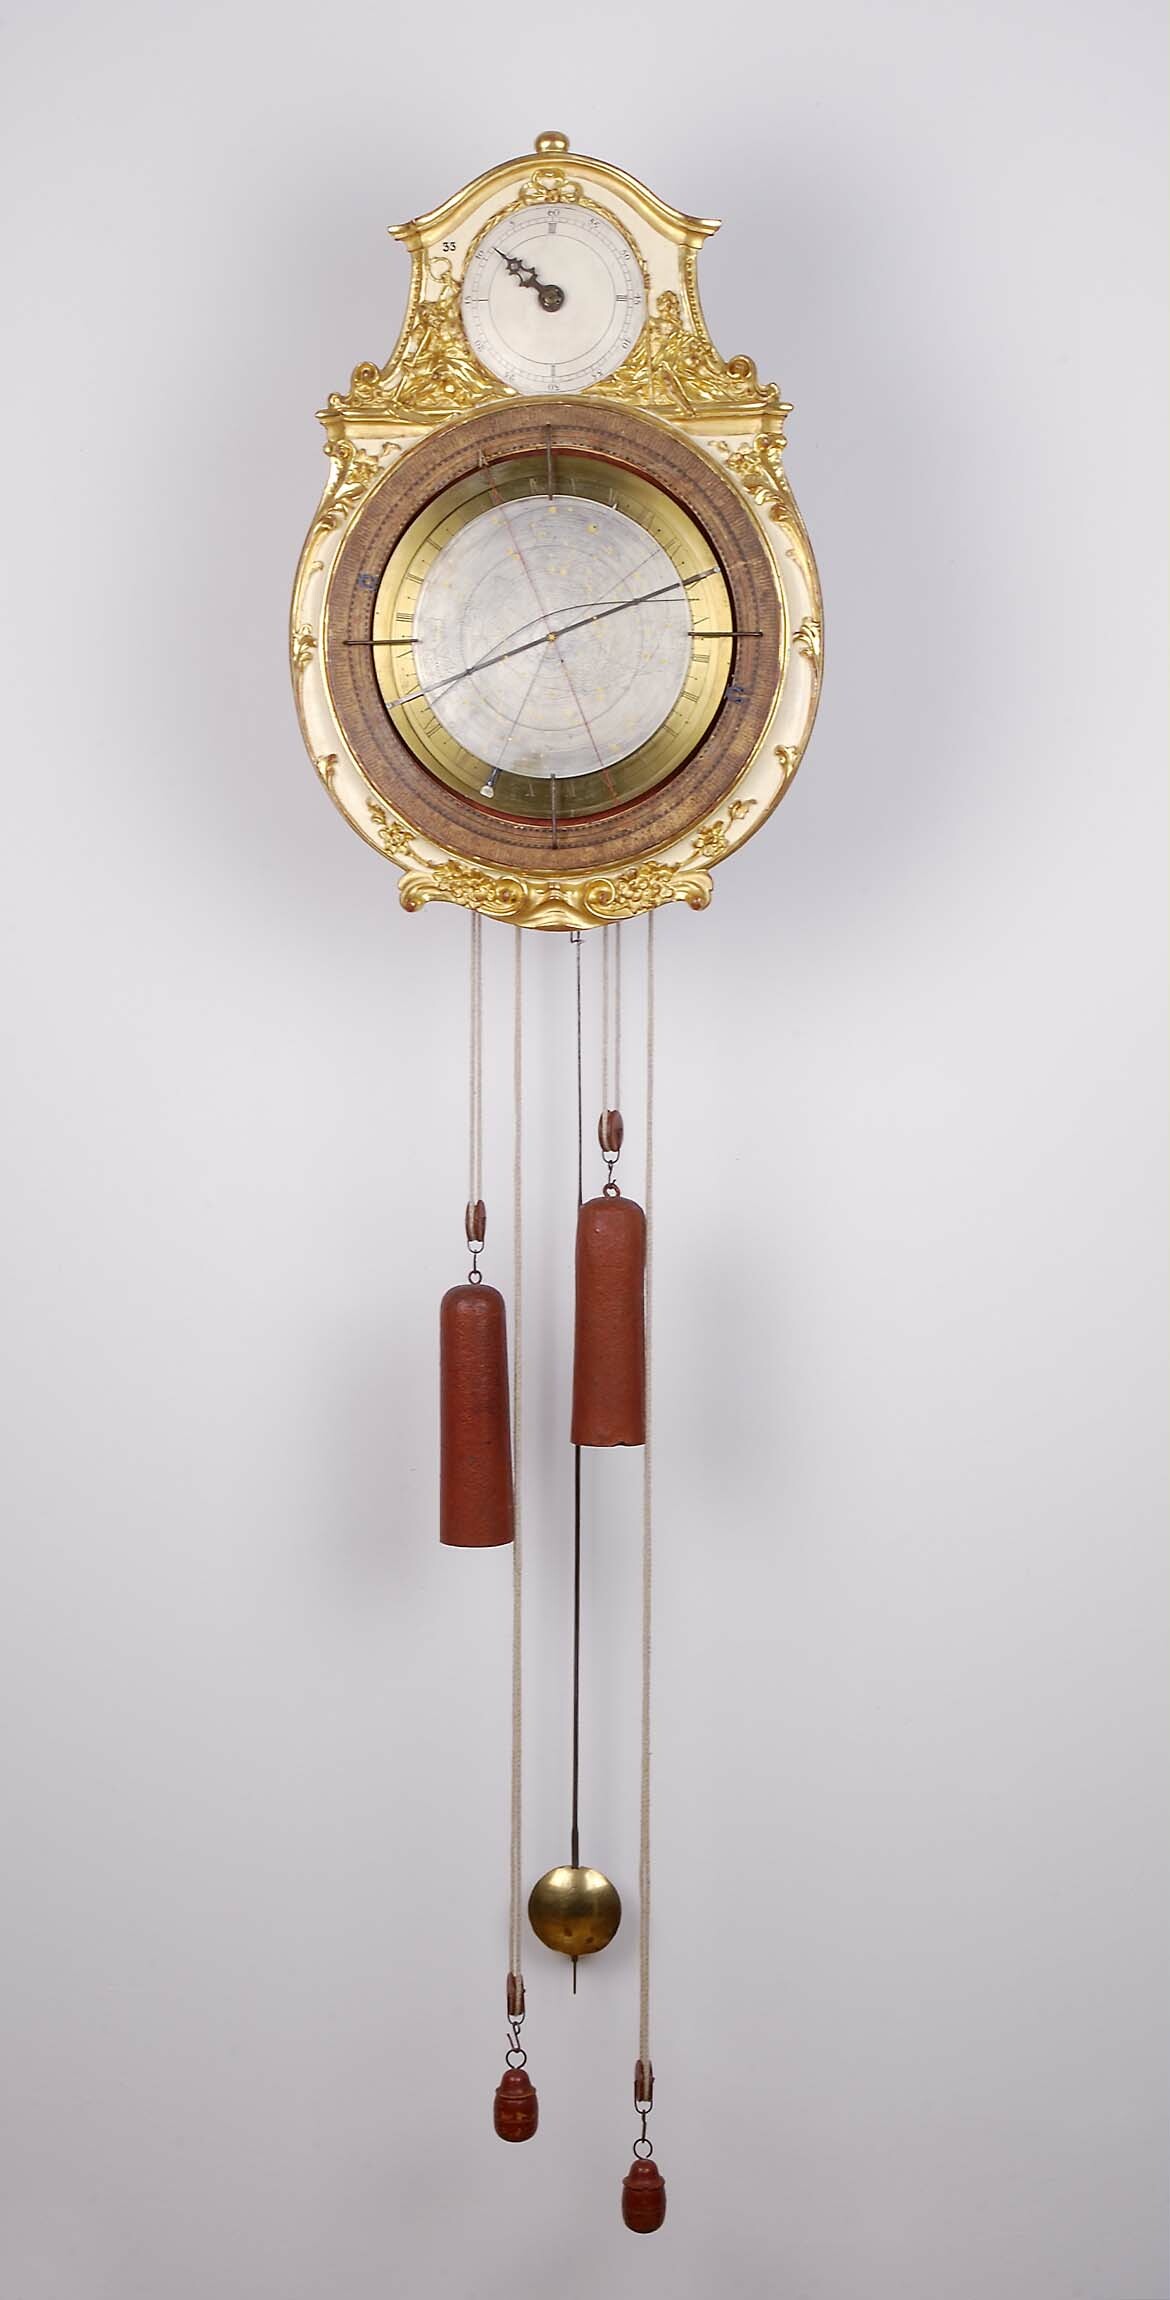 Astronomische Uhr, Thaddäus Rinderle, Matthias Faller, St. Peter, 1787 (Deutsches Uhrenmuseum CC BY-SA)